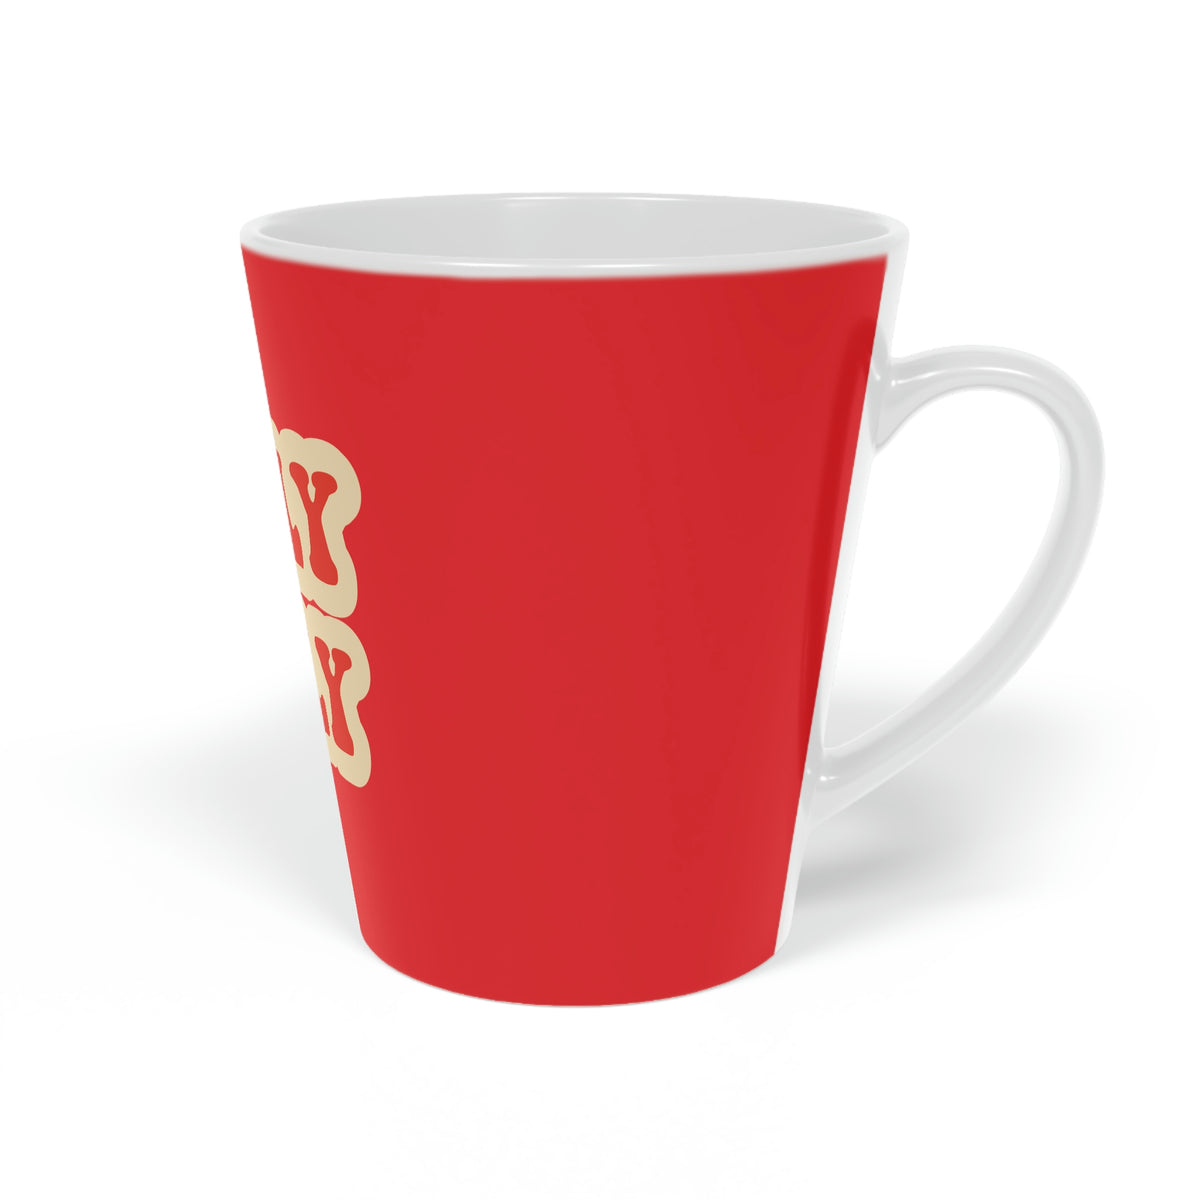 Christmas mug, Holly Jolly mug, Holiday mug, pollyanna gift, christmas gift, cute mug, funny mug